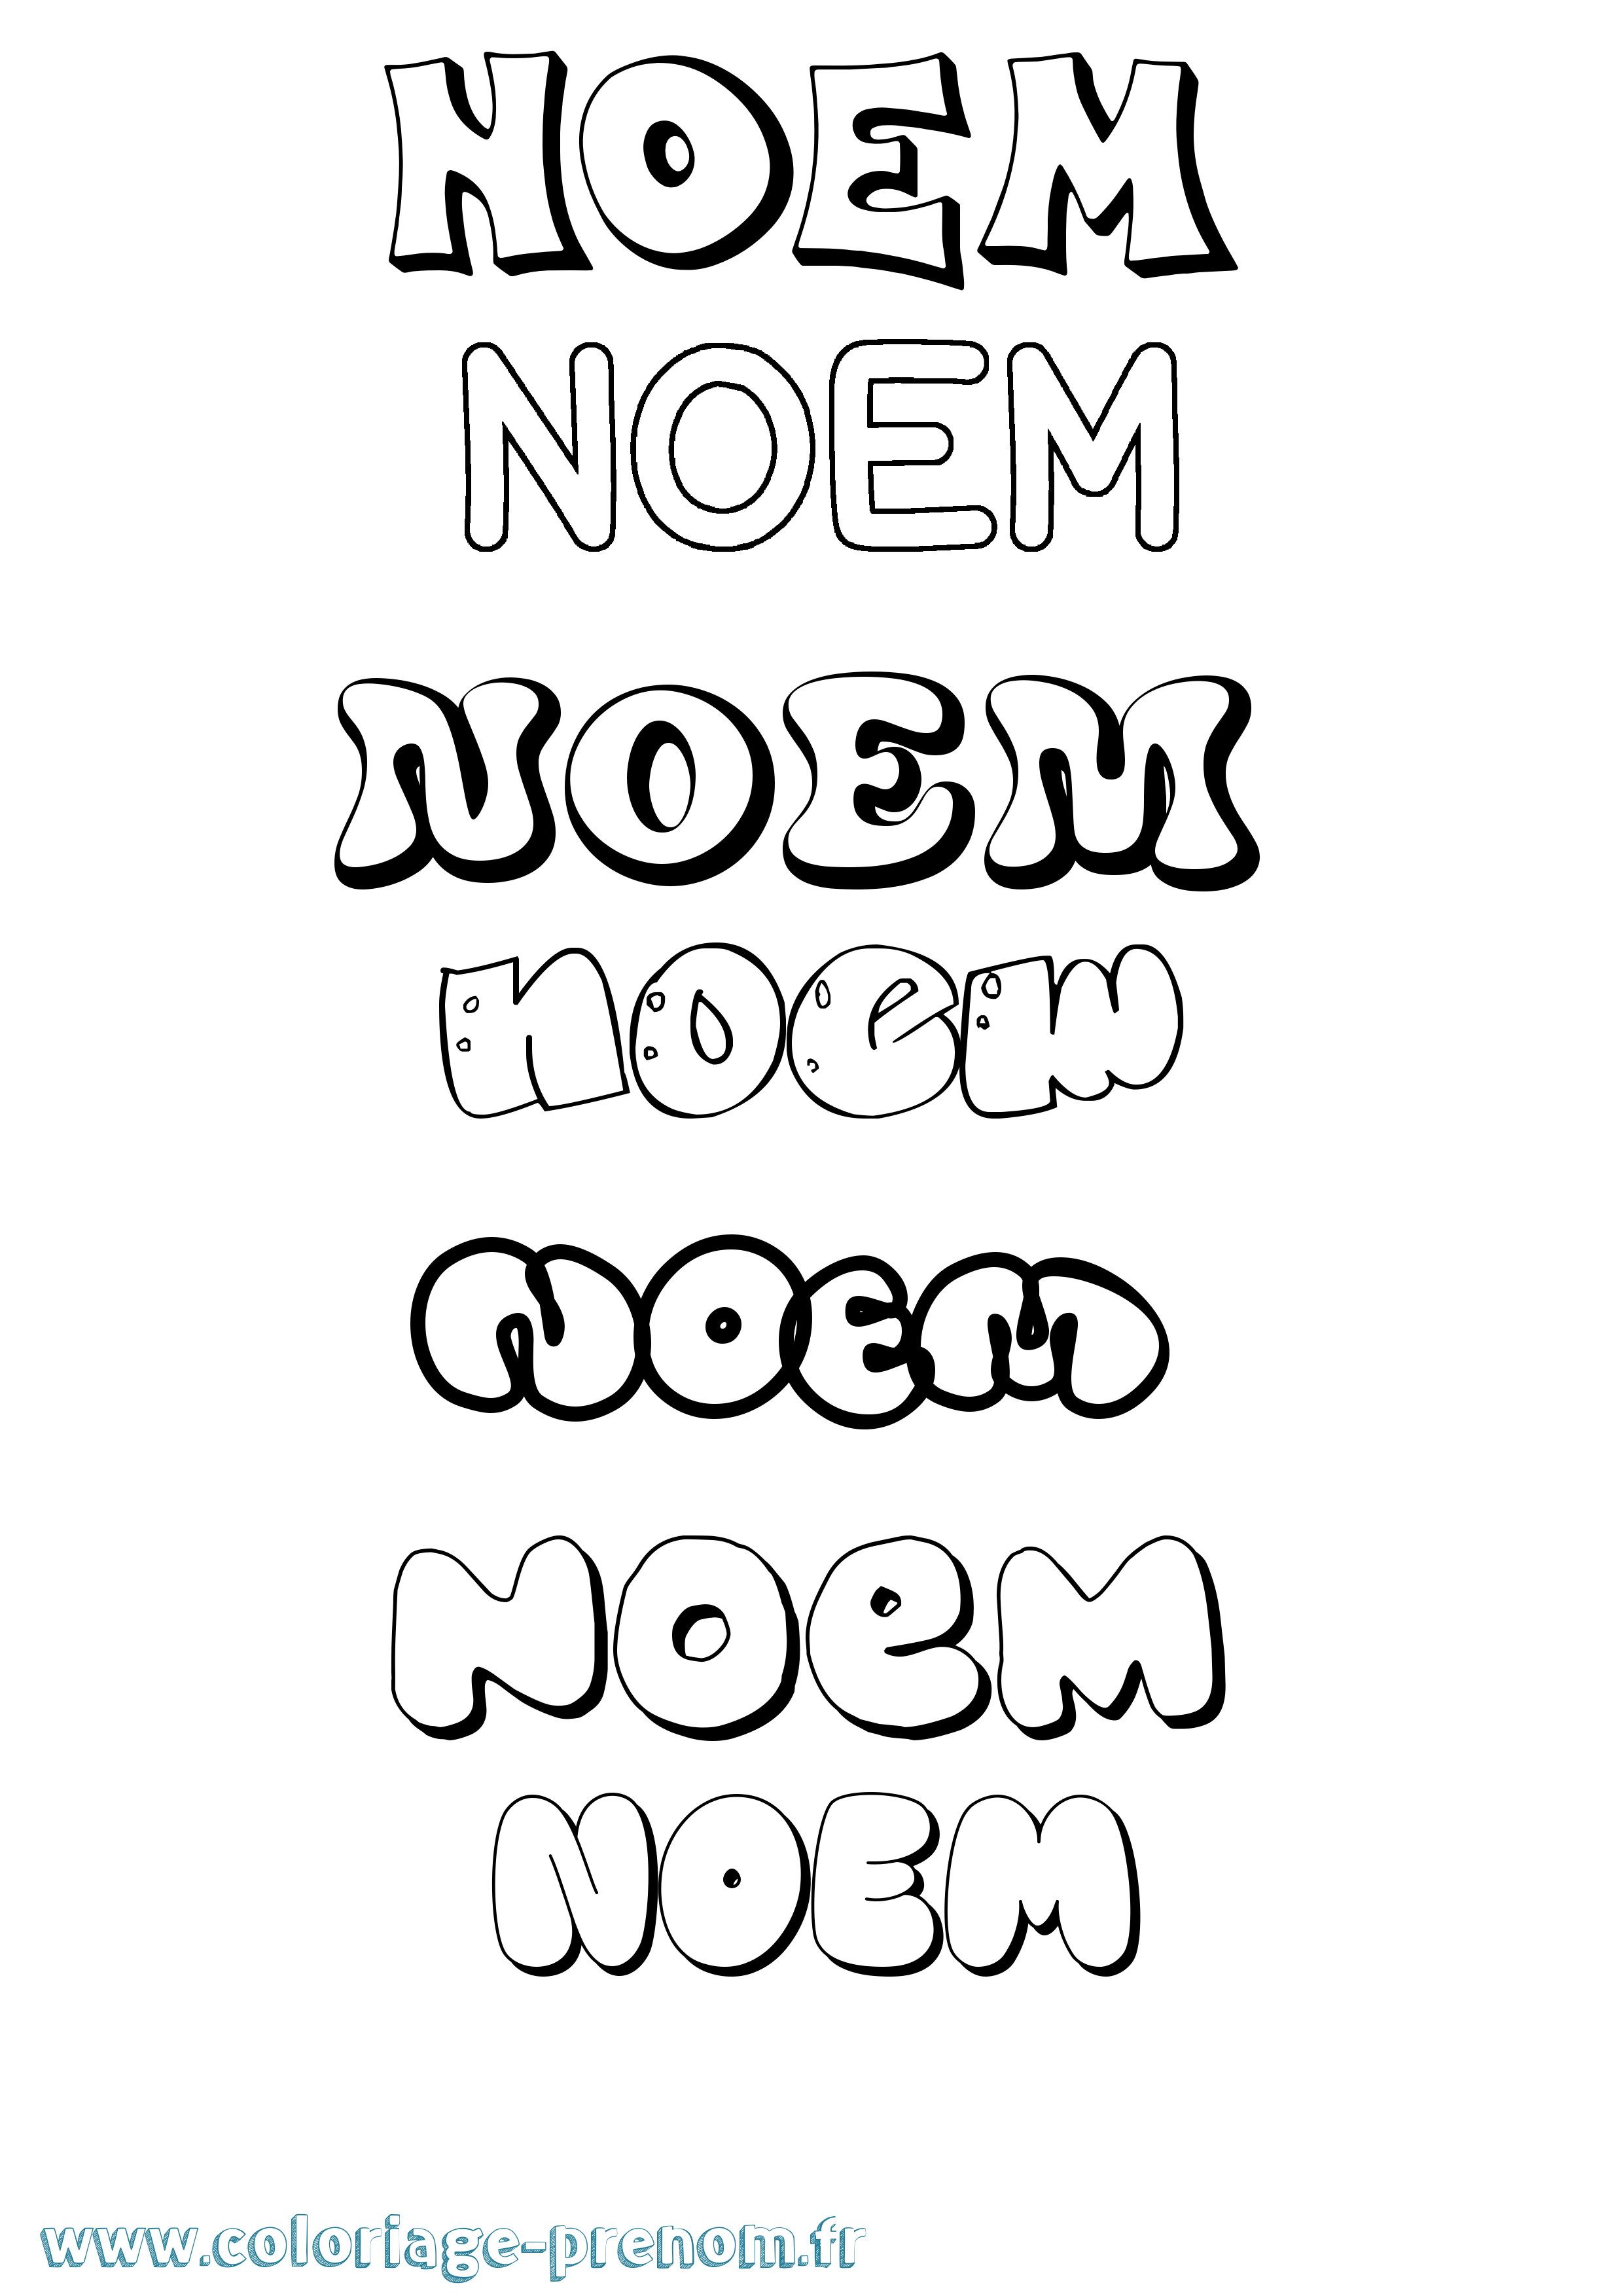 Coloriage prénom Noem Bubble